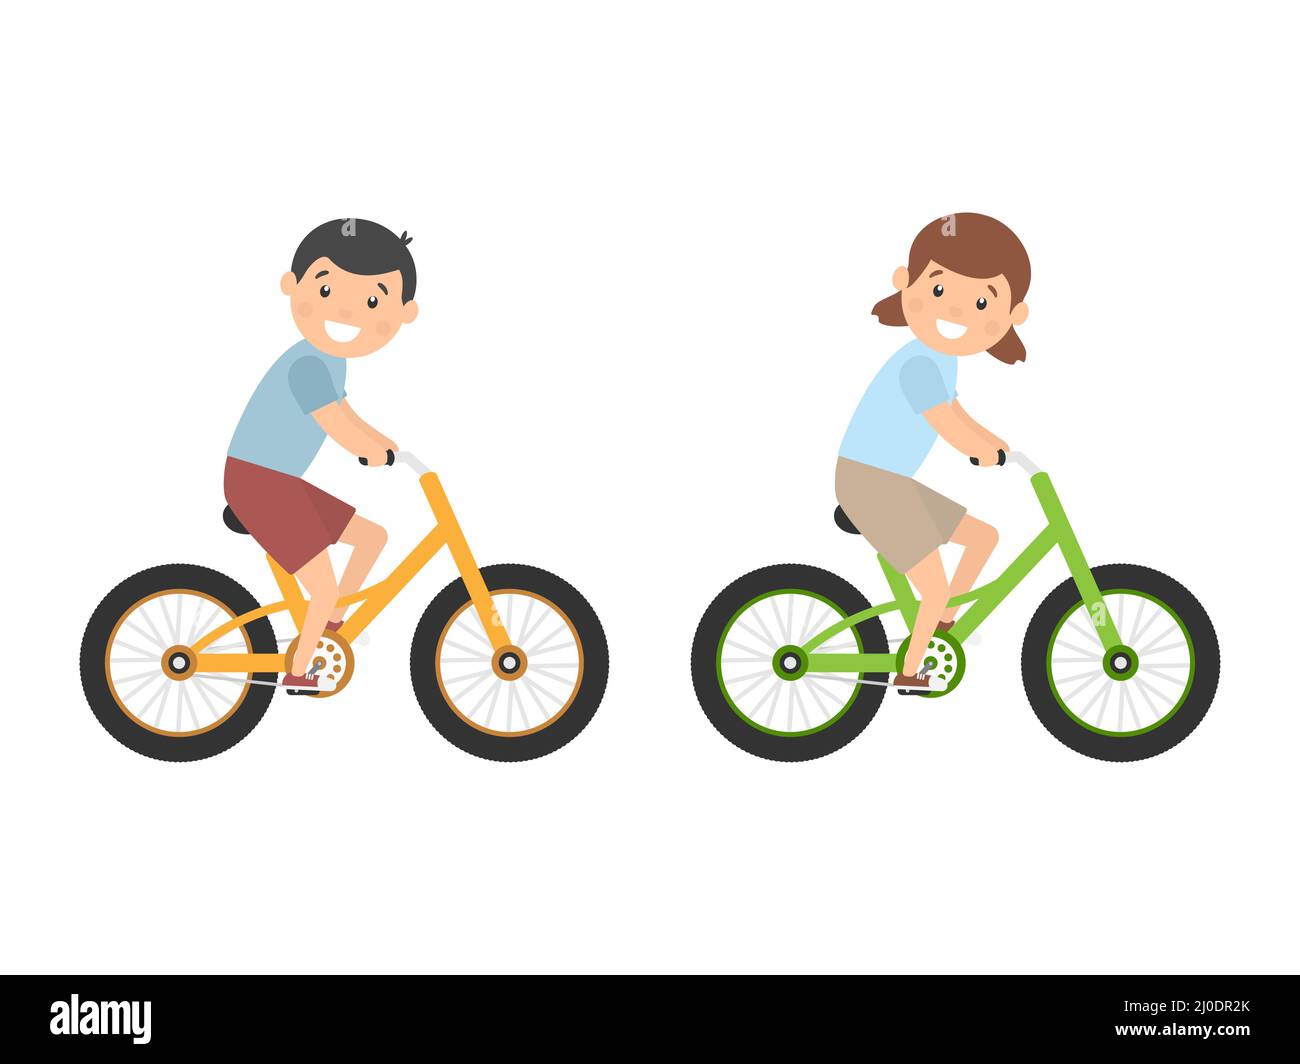 Nette glückliche Kinder, die Fahrräder reiten. Mädchen und Jungen fahren Fahrräder. Gesunder Lebensstil. Stock Vektor